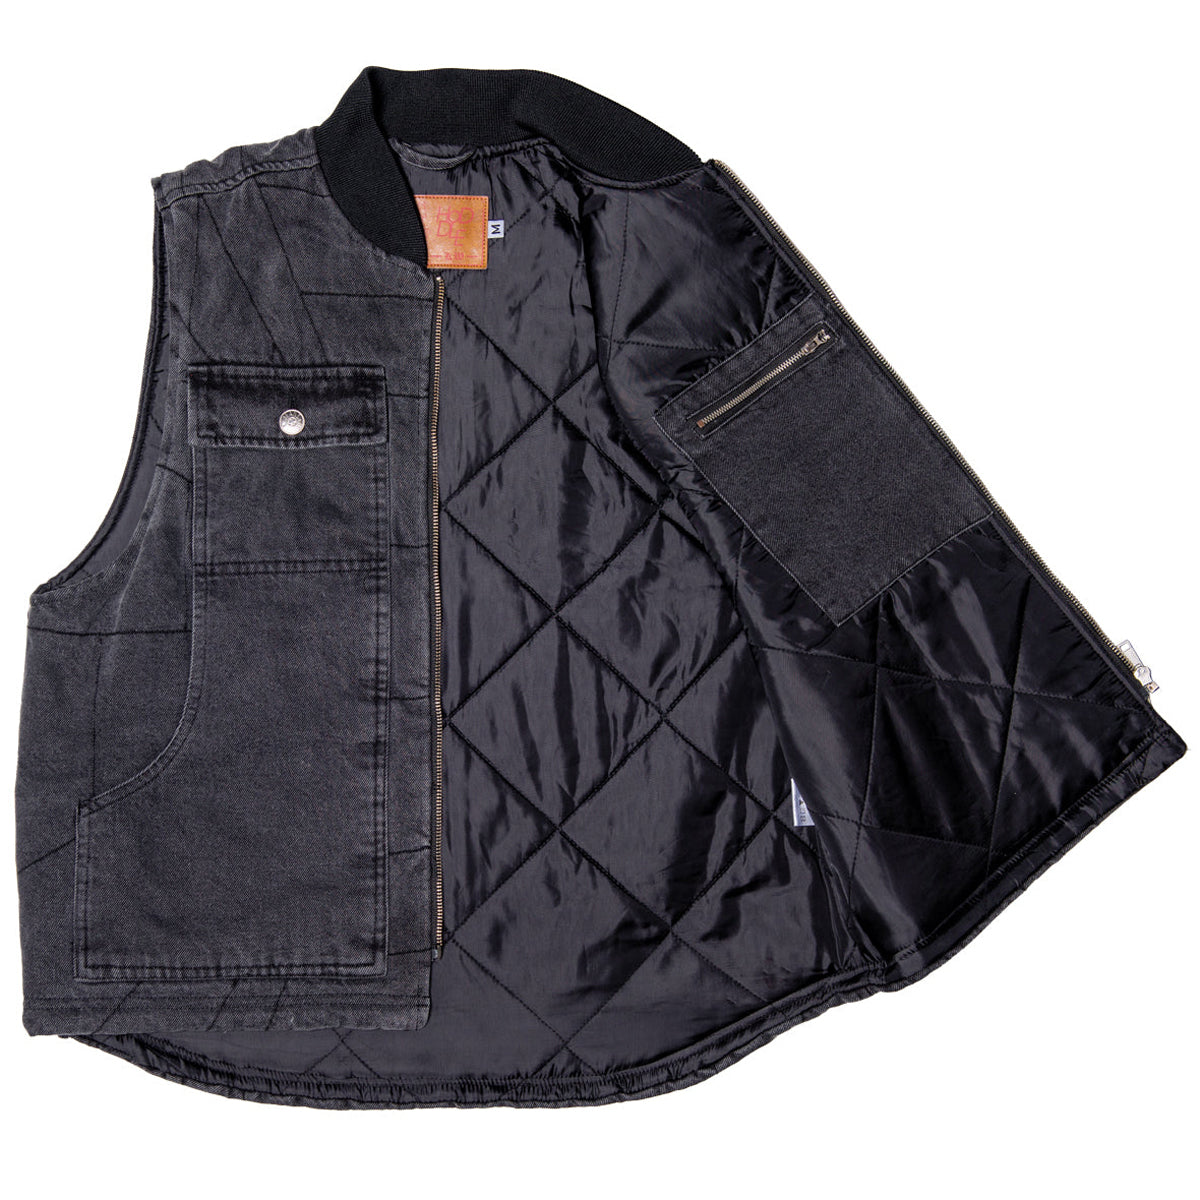 Hoddle Zip Up Carpenter Vest Jacket - Black Denim Wash image 3